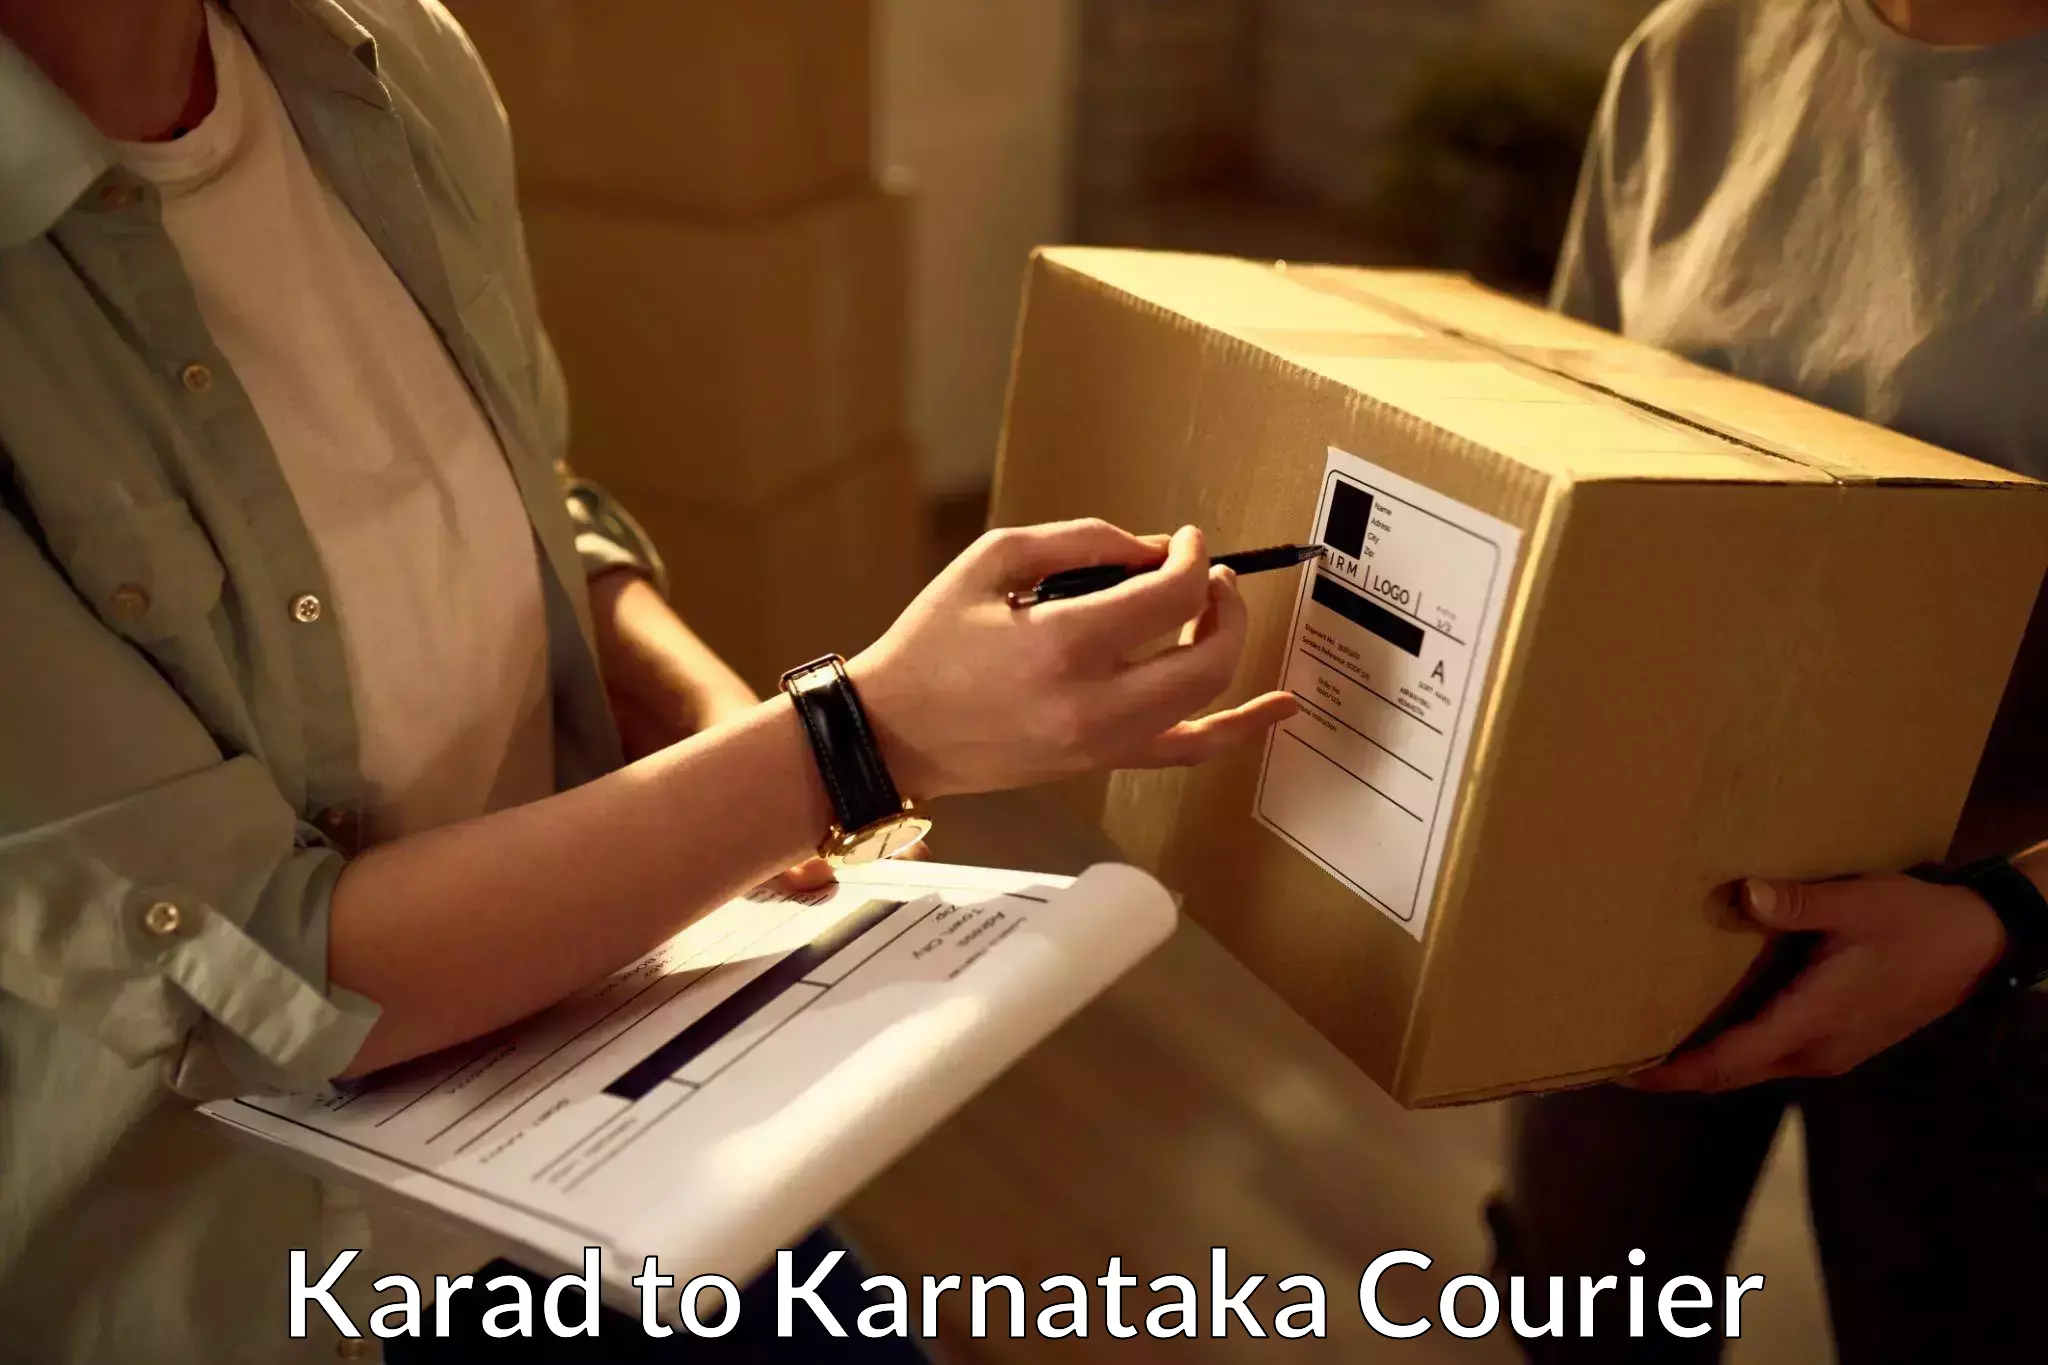 Seamless shipping service Karad to Gauribidanur